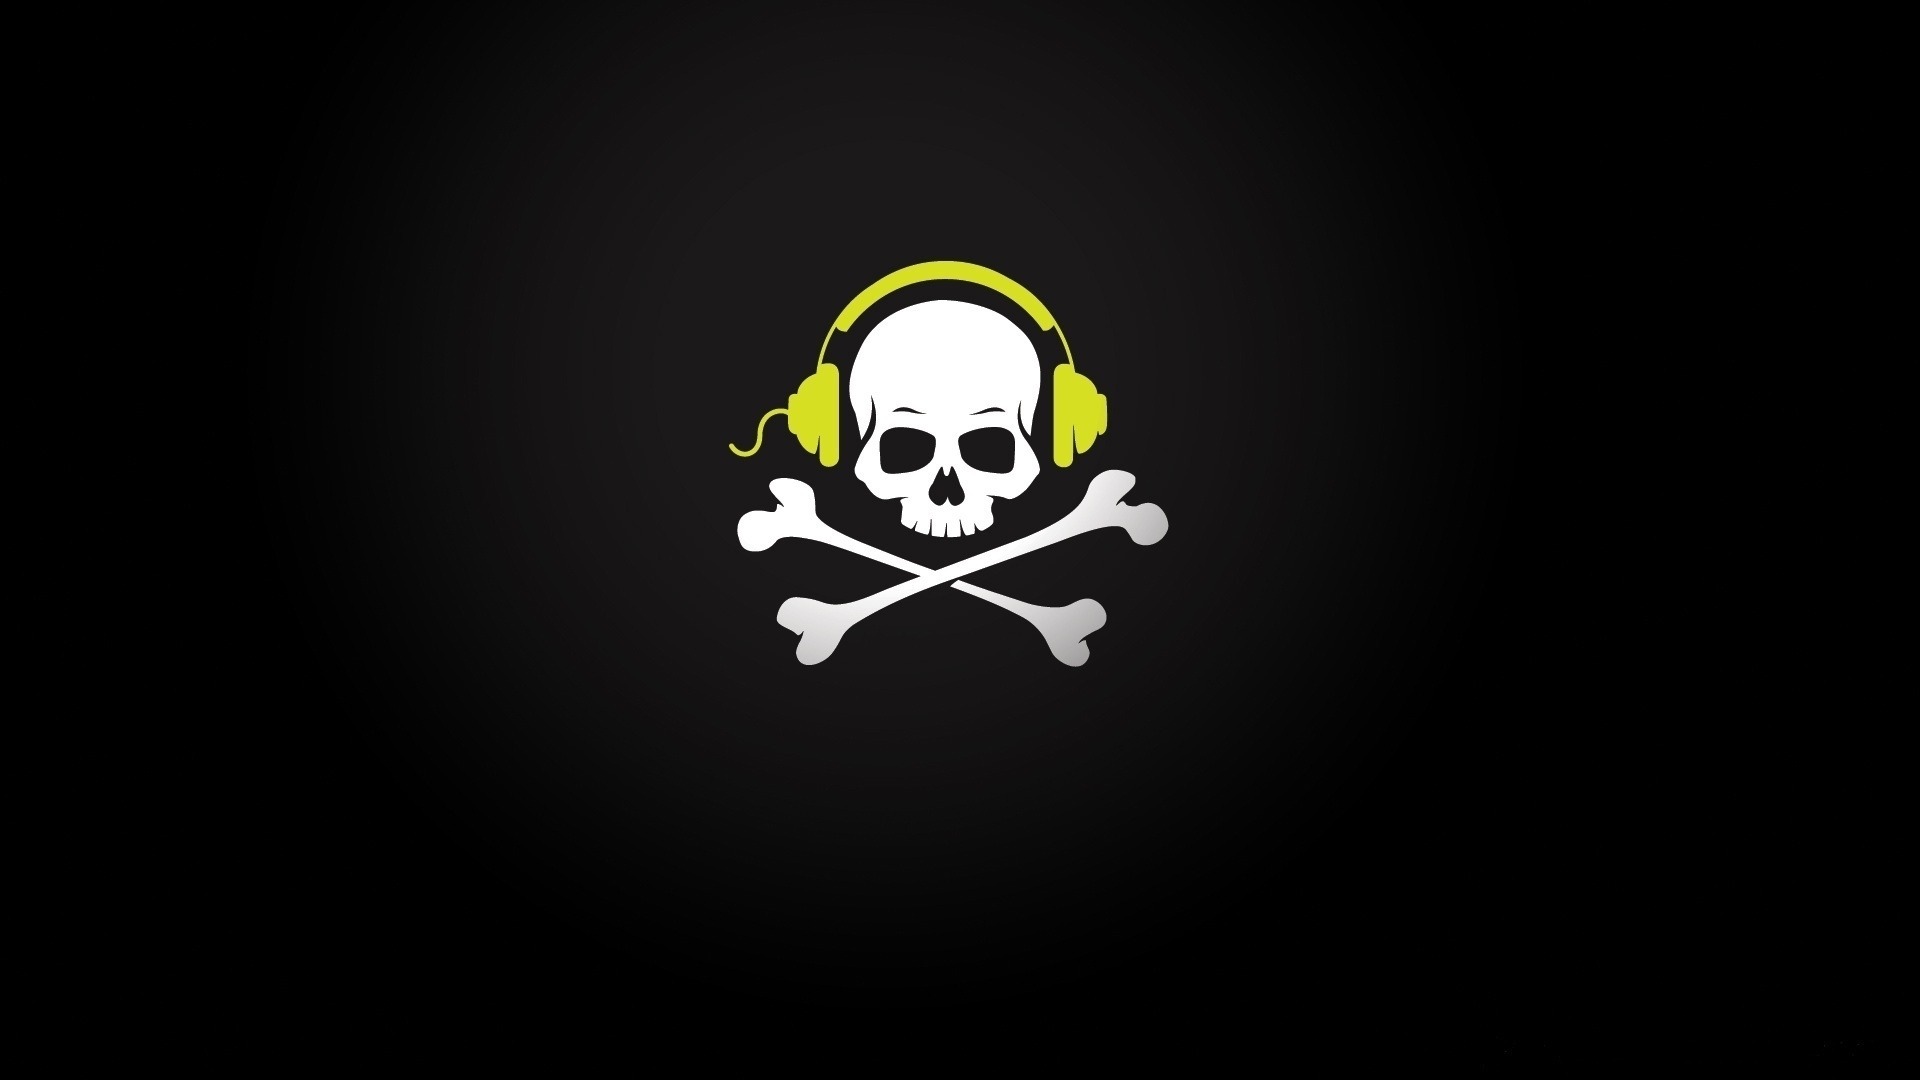 headphones, music, black, skeletons, background Full HD